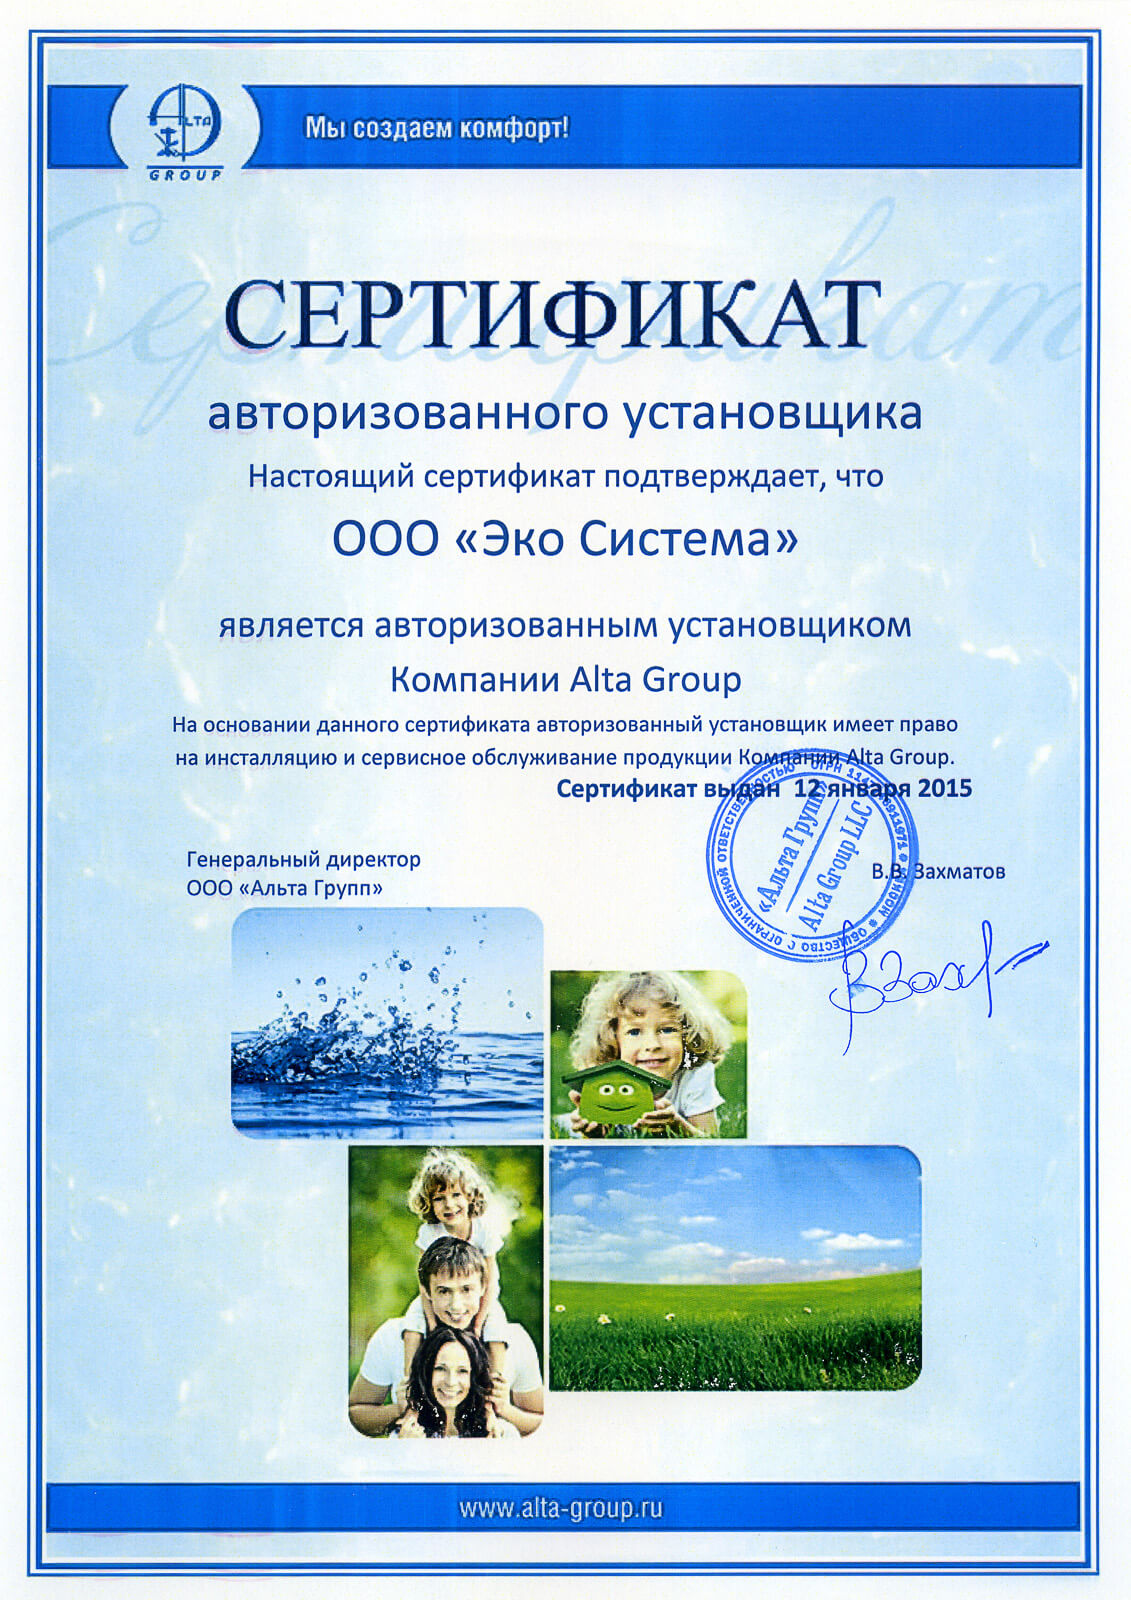 Сертификат авторизованного установщика